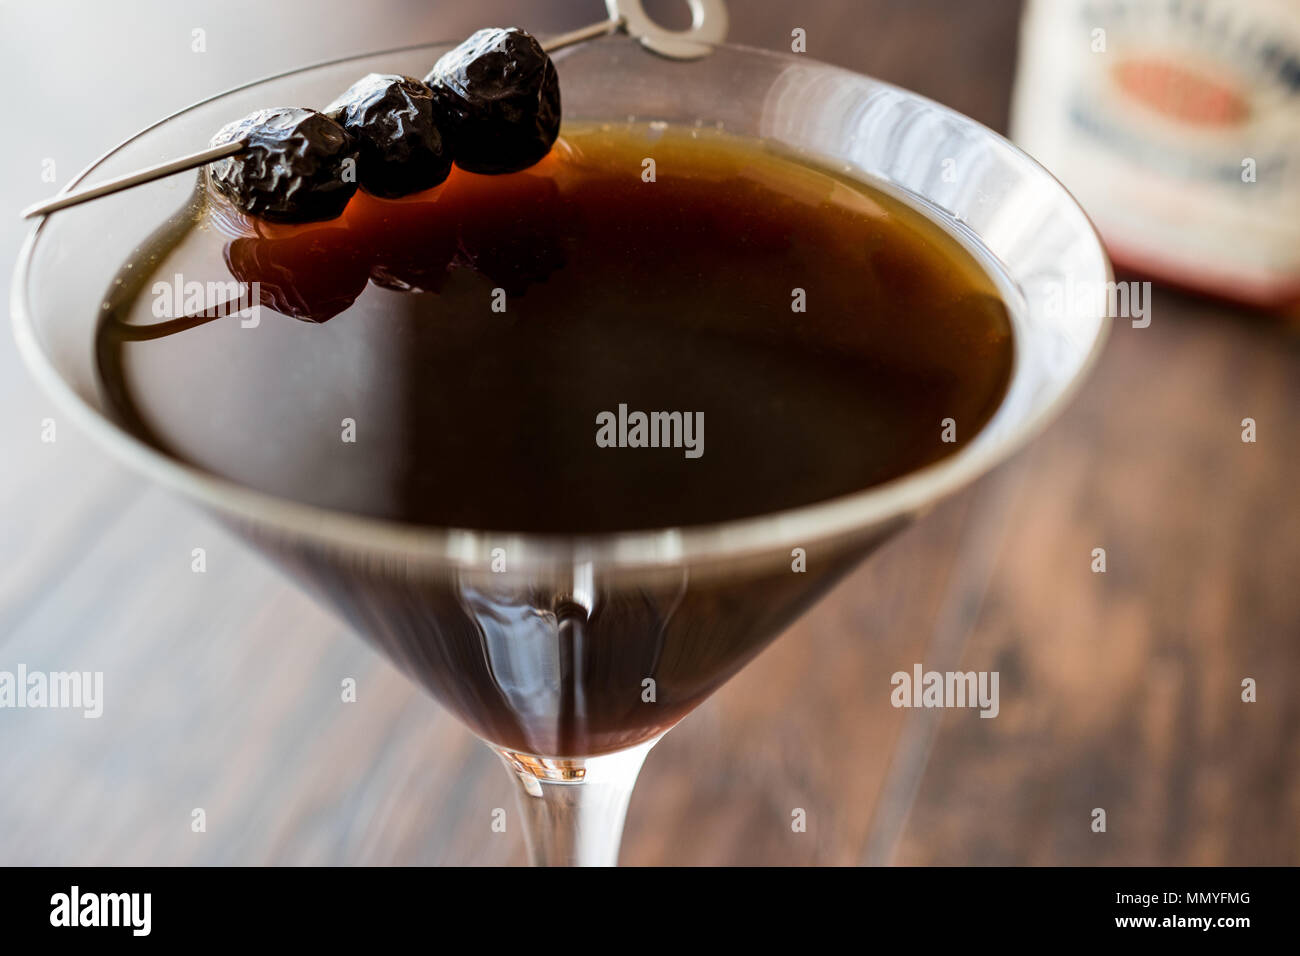 Schwarz Manhattan Cocktail mit Oliven auf dunklen Holz- Oberfläche. Dunkle Konzept. Stockfoto